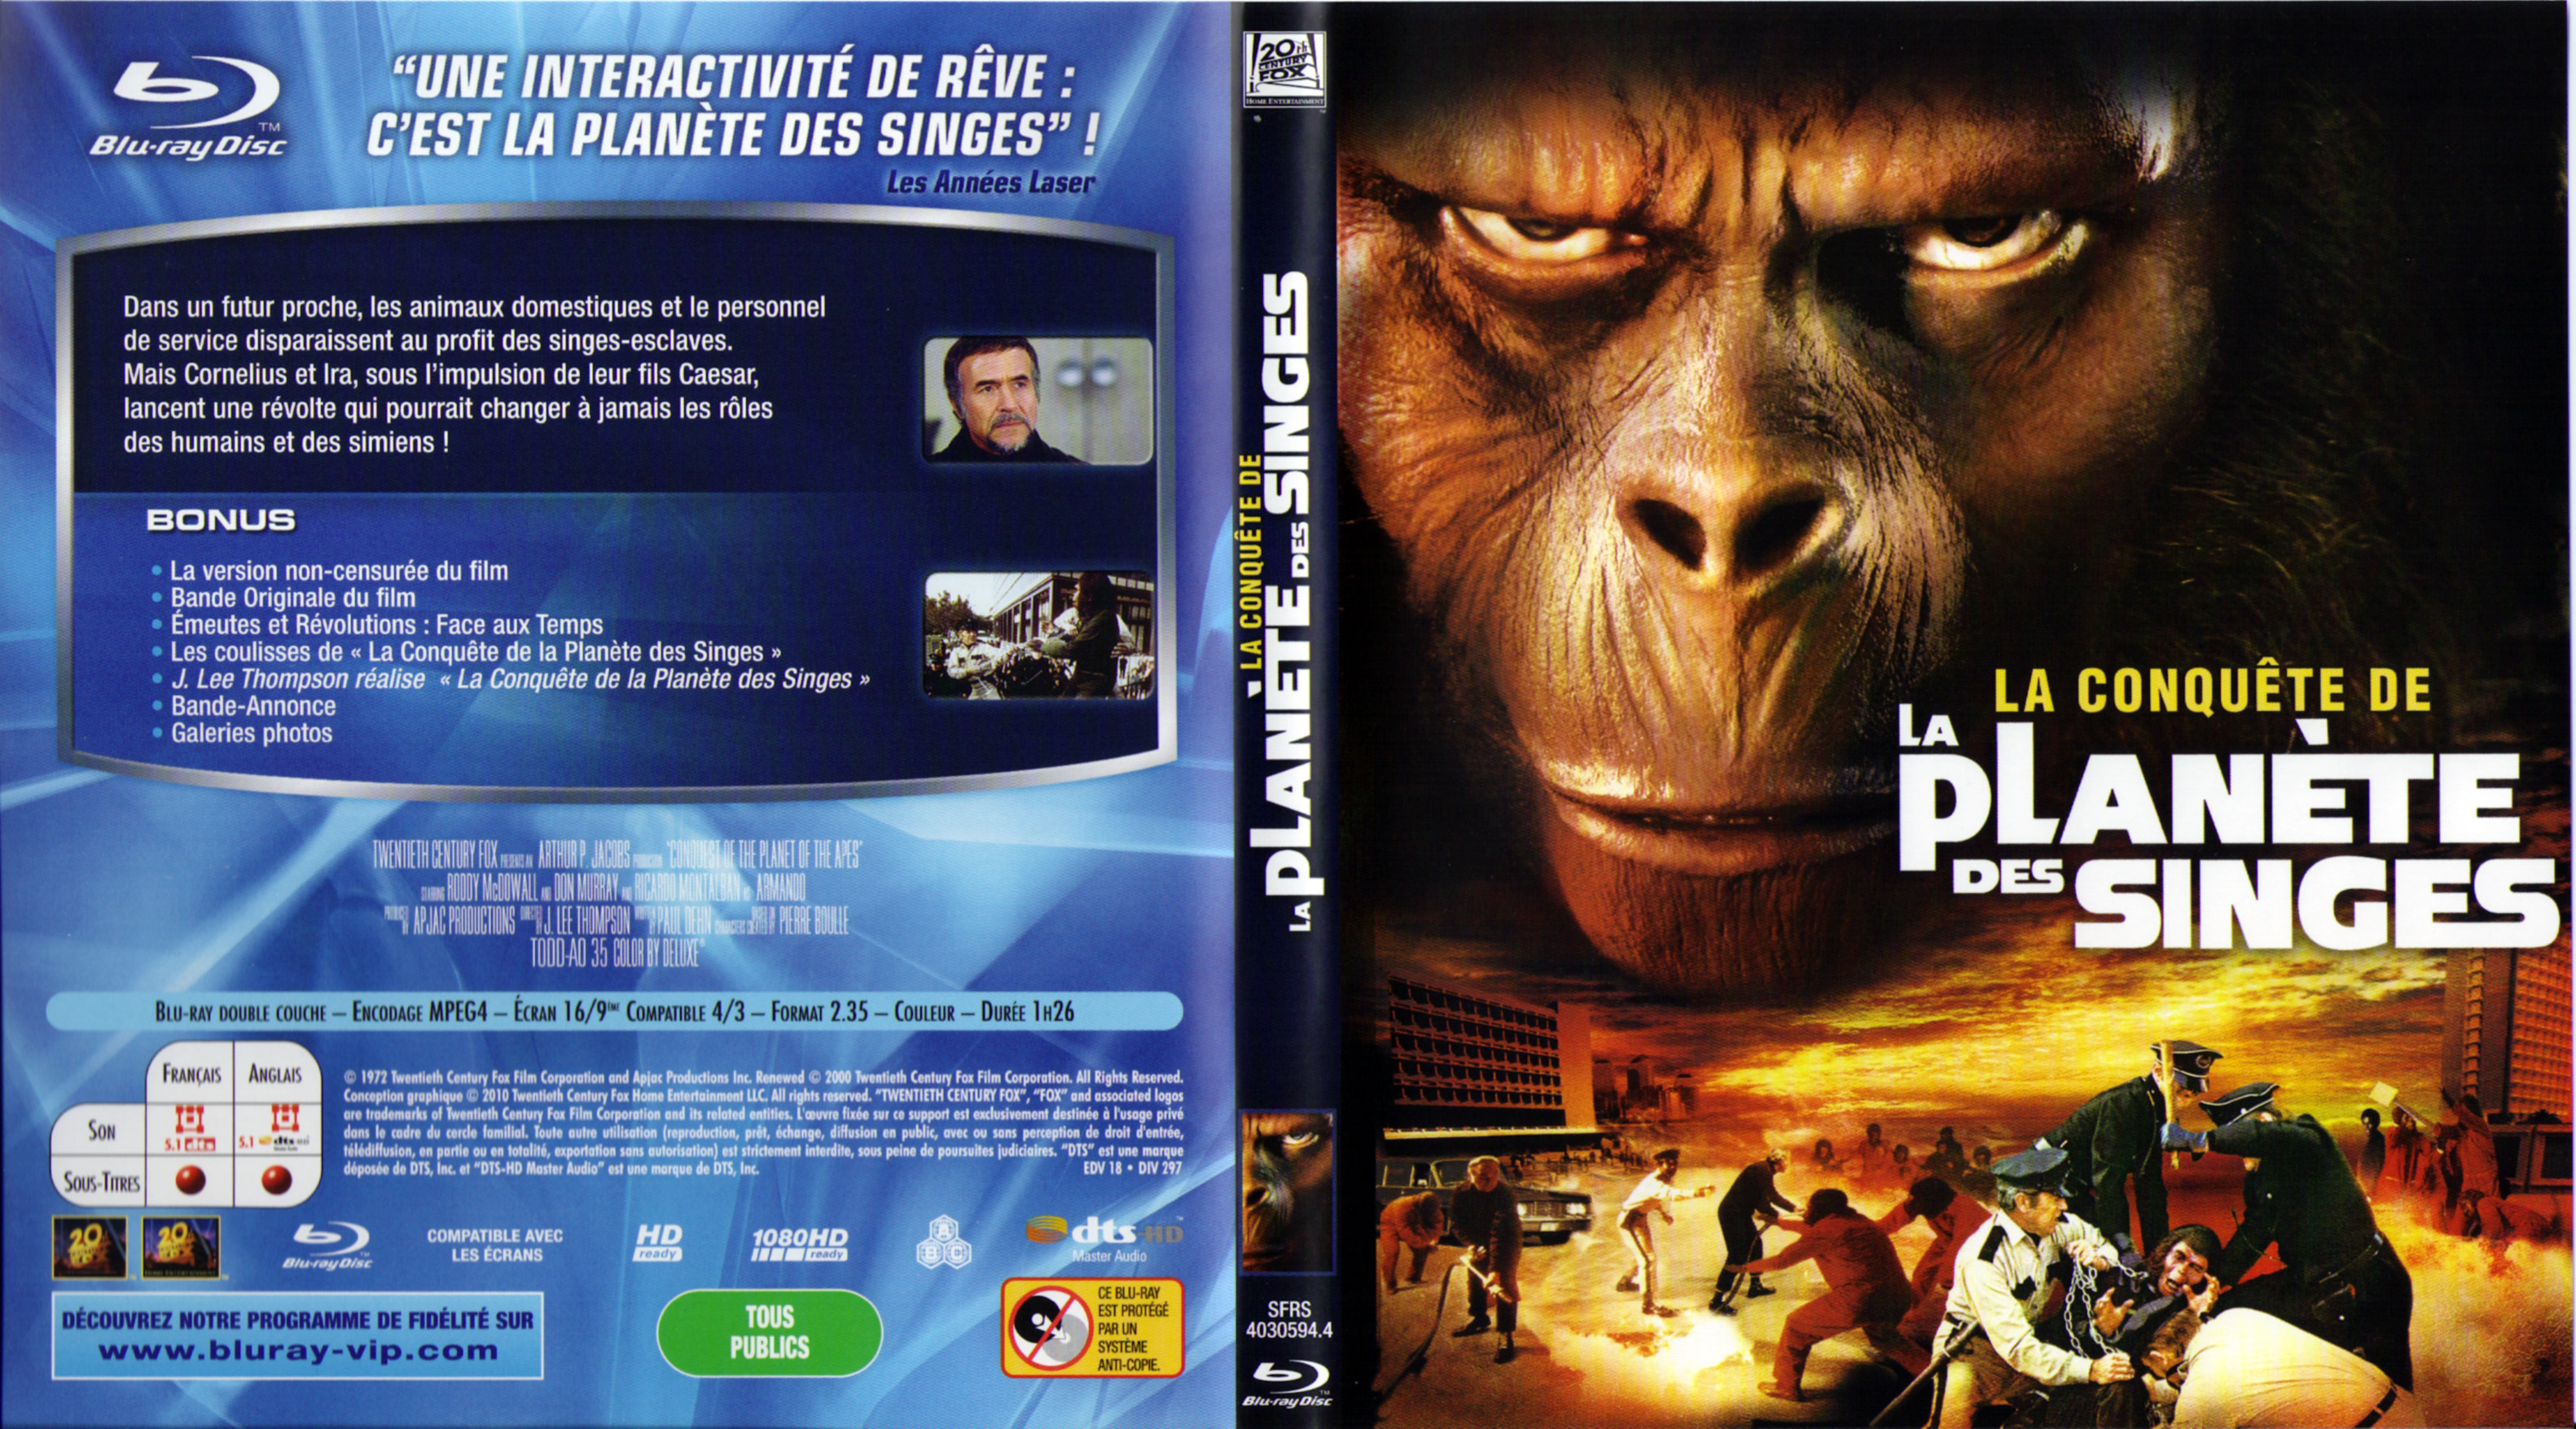 Jaquette DVD La conquete de la planete des singes (BLU-RAY)